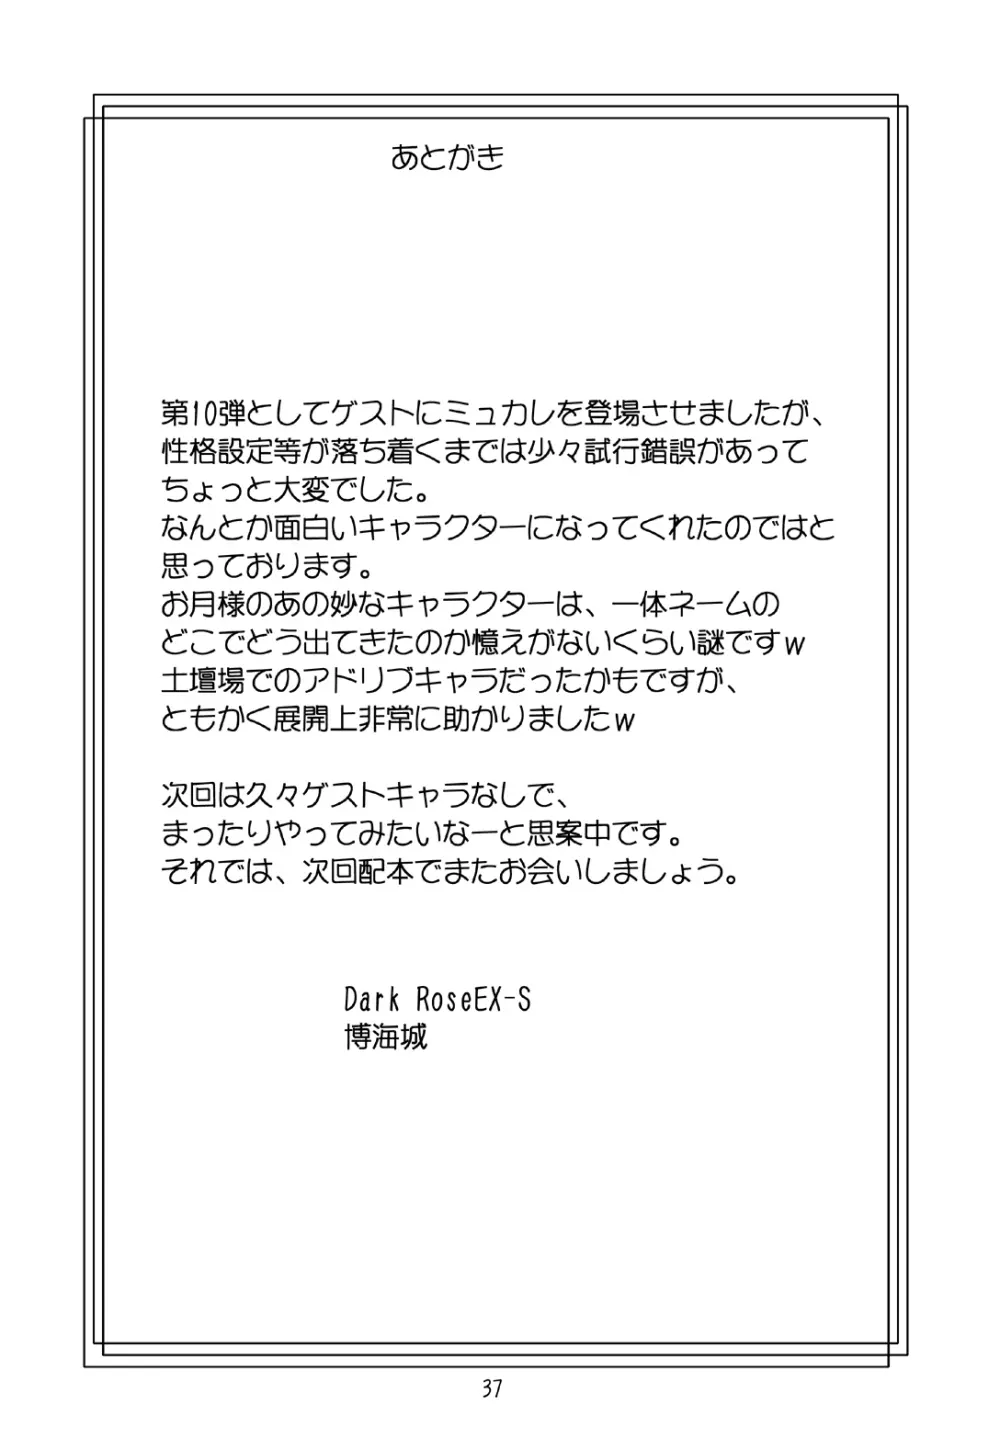 JOB☆STAR 10 37ページ